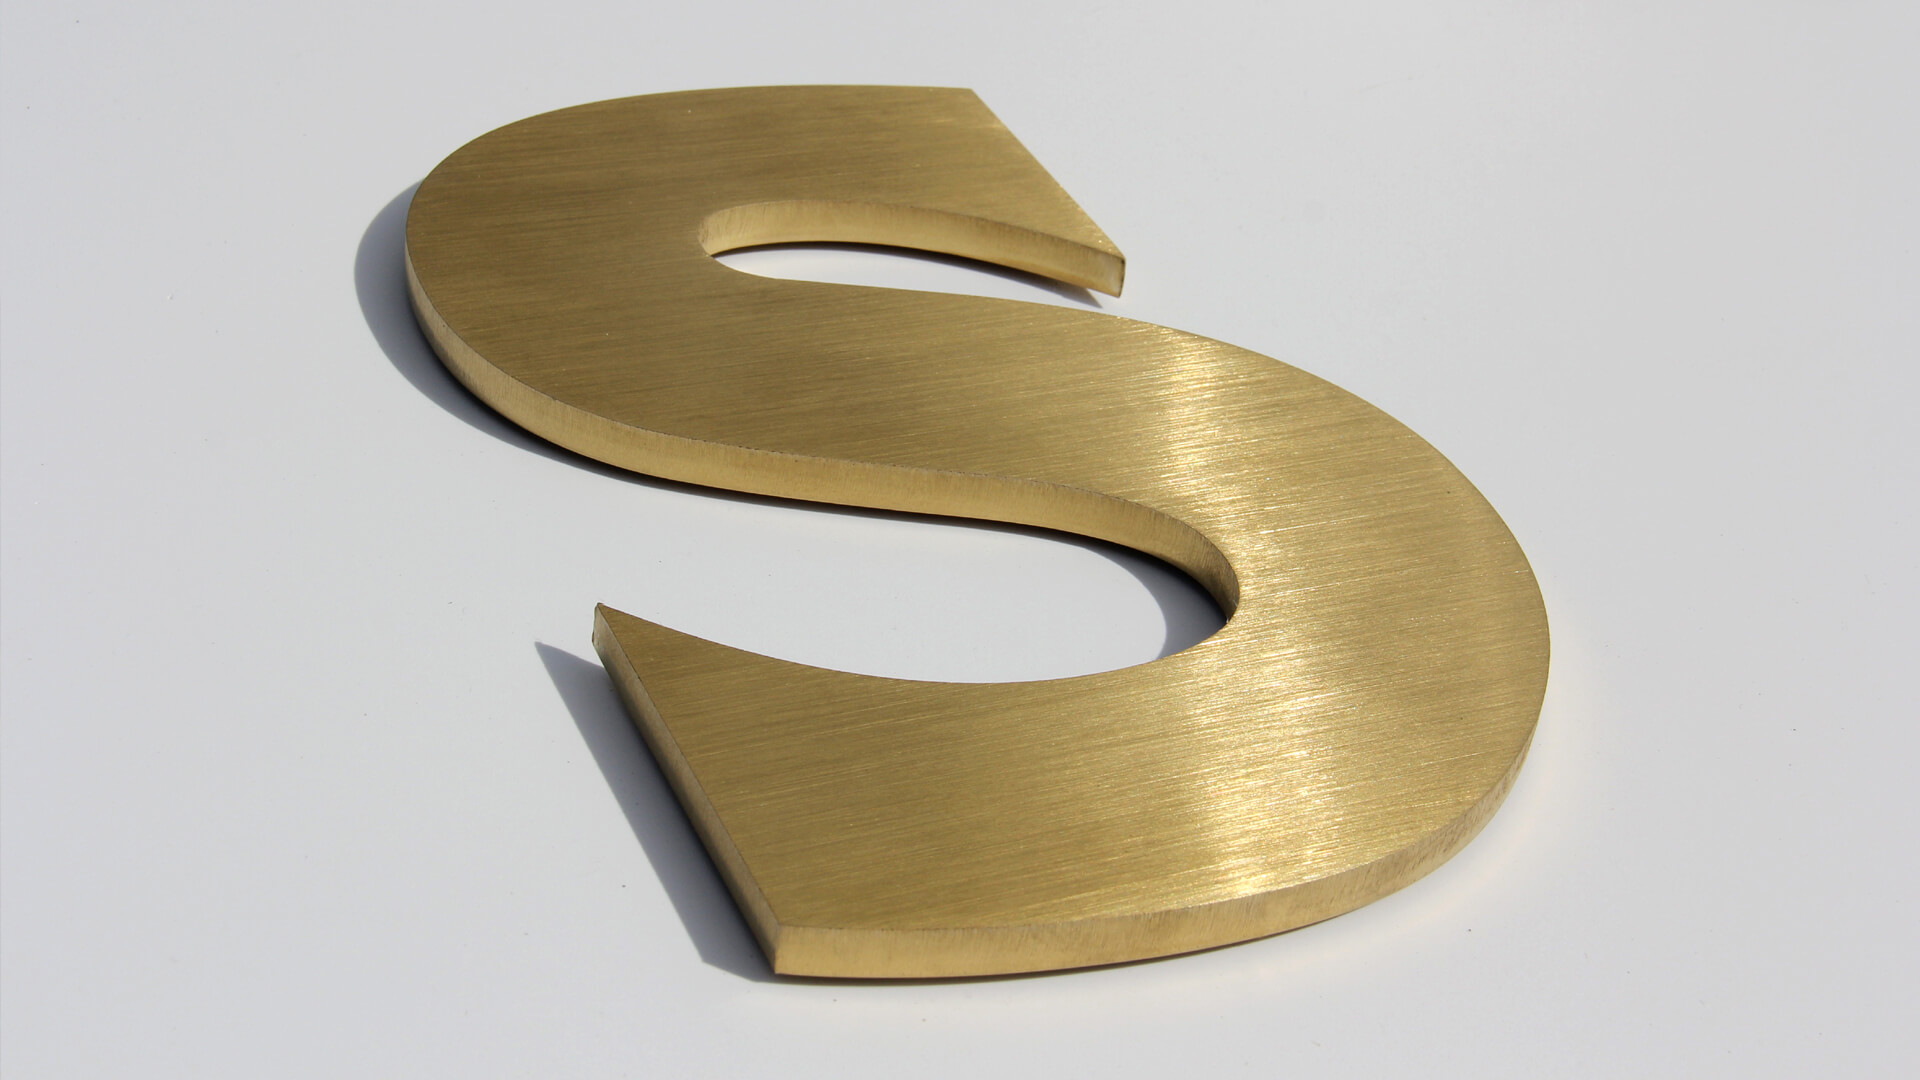 De gouden letter S - Metalen letter S in goud, industriële stijl.